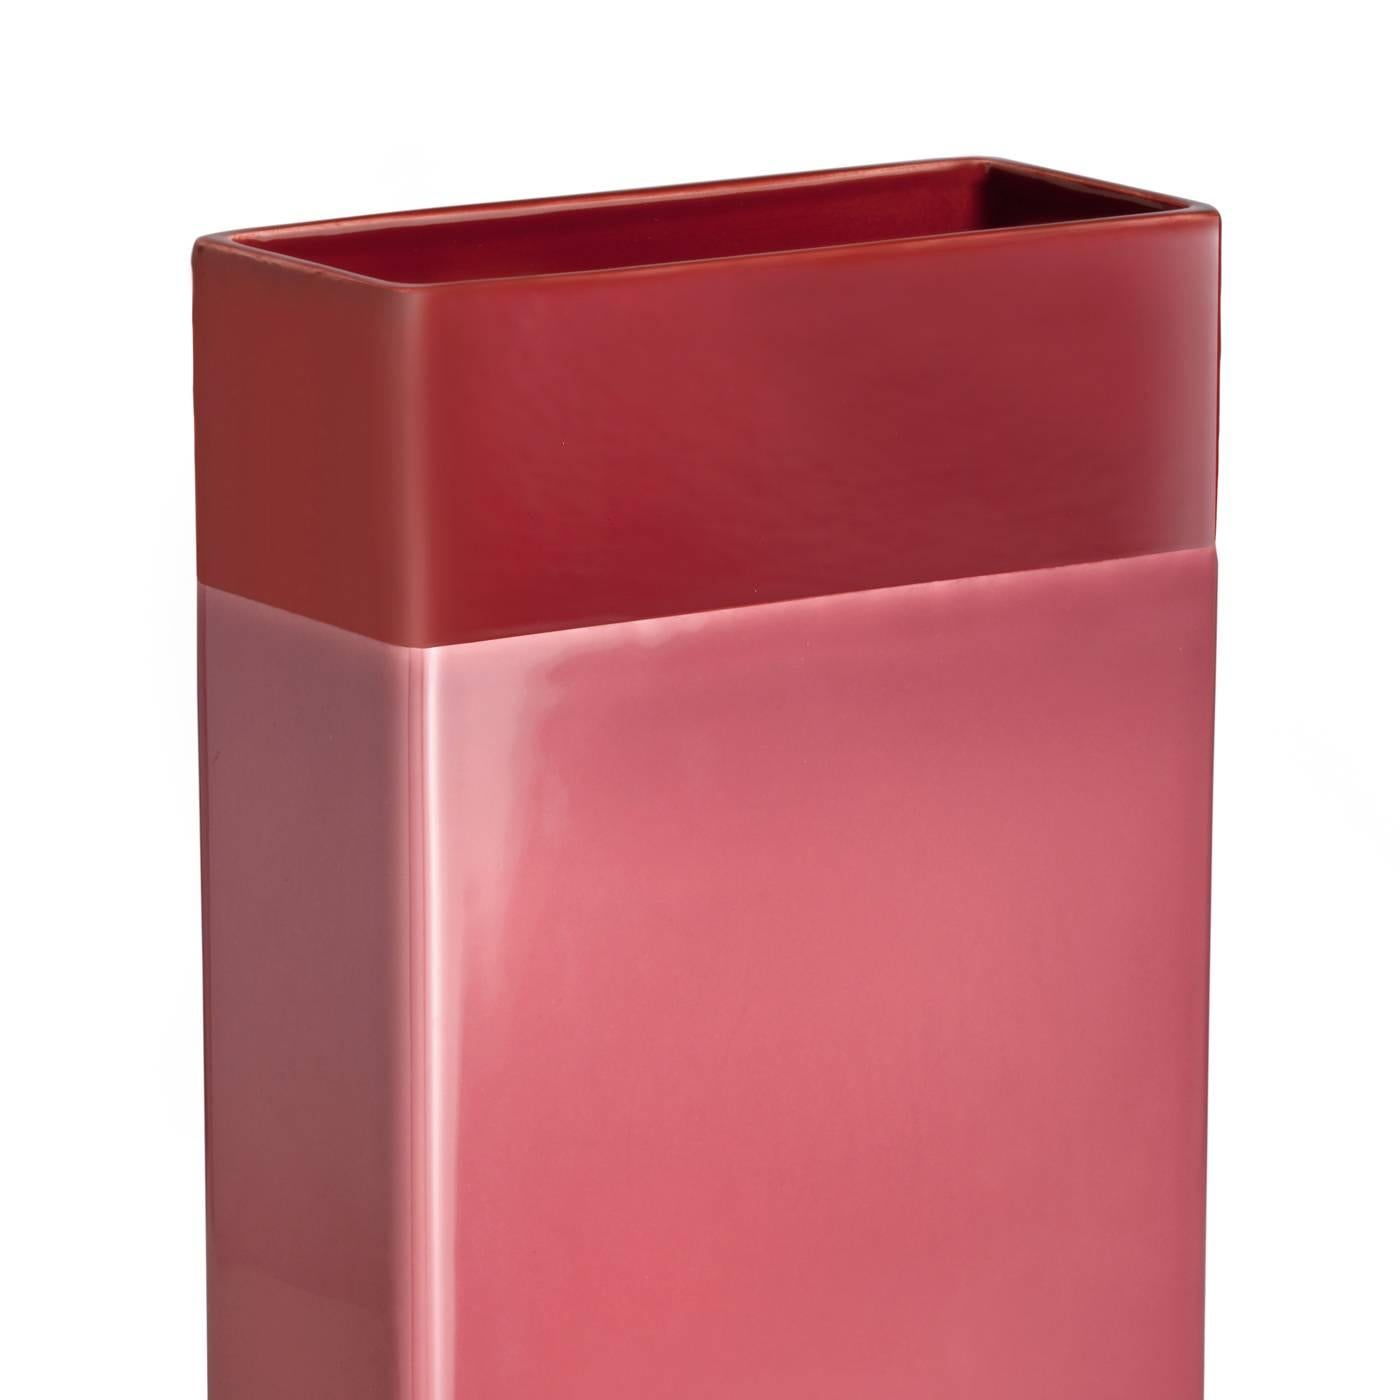 Diese auffällige Vase hat eine schlichte, rechteckige Form, die durch einen Messingstreifen am Boden und zwei verschiedene, massive Oberflächen hervorgehoben wird: ein großer Streifen in Rosa und ein leuchtend roter oben. Das Stück aus weißem Ton